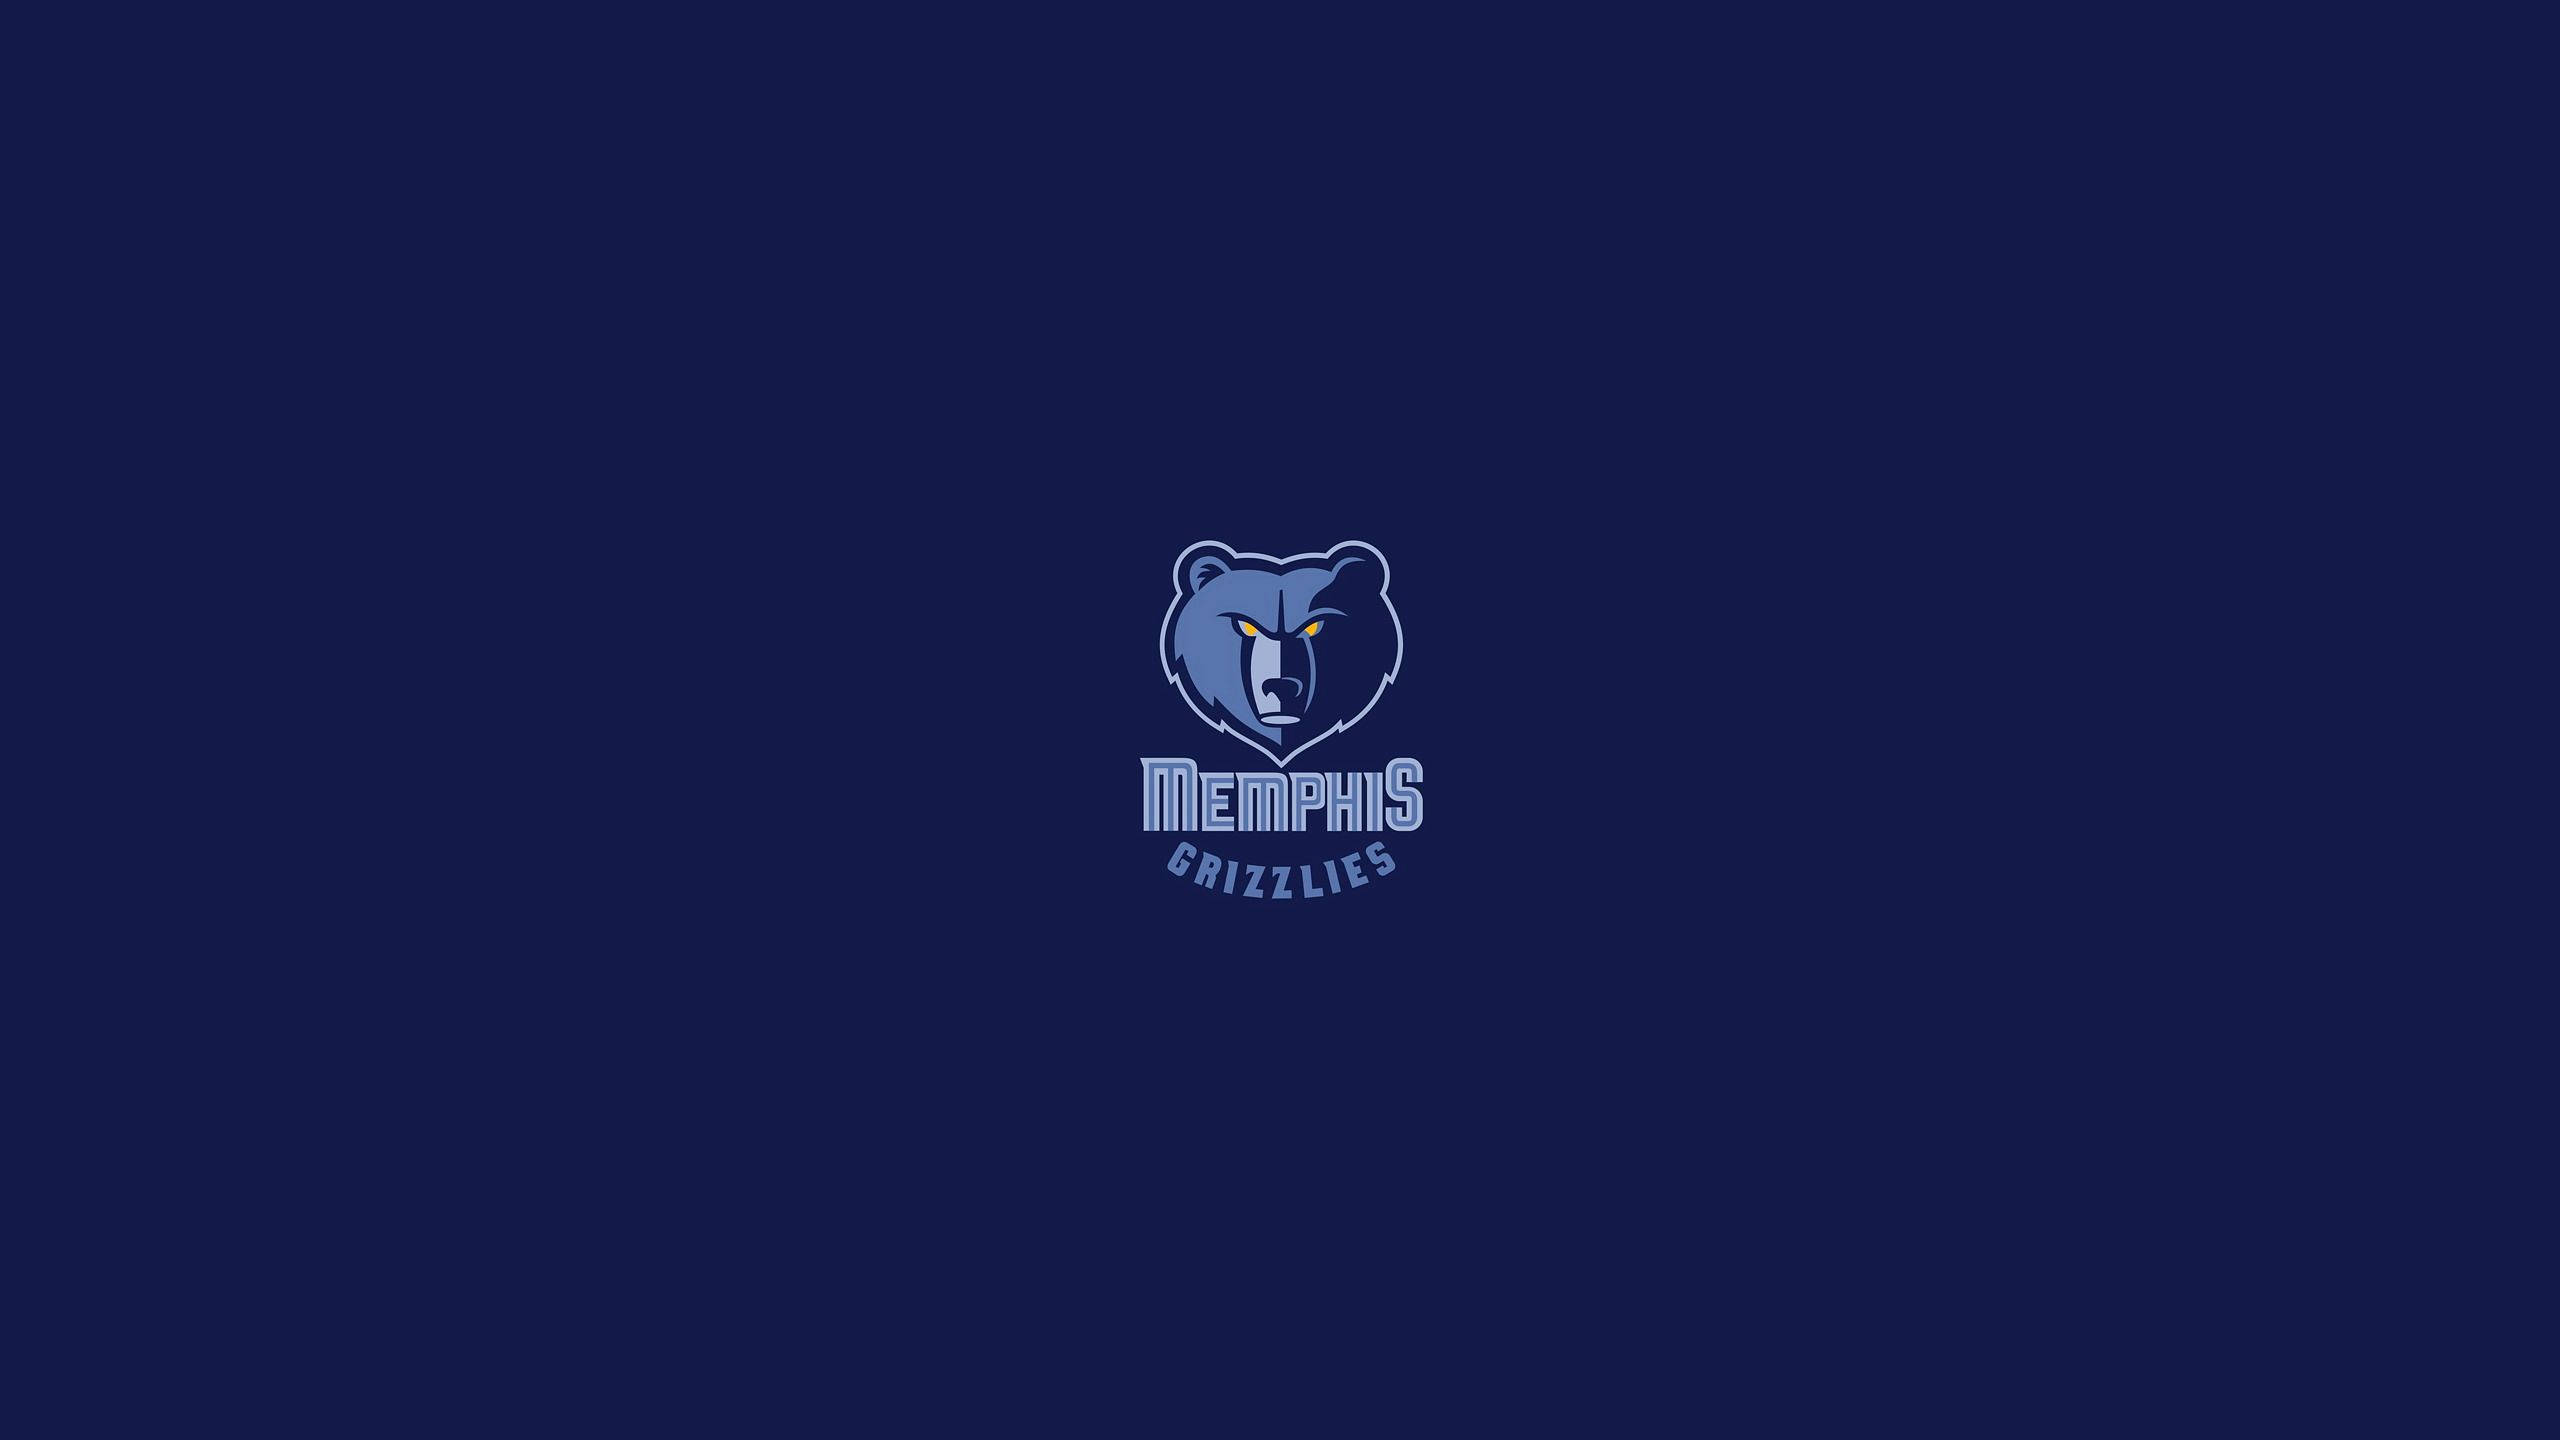 Papelde Parede Do Computador Ou Celular Com O Logo Do Memphis Grizzlies Da Nba Em Azul Escuro Minimalista. Papel de Parede